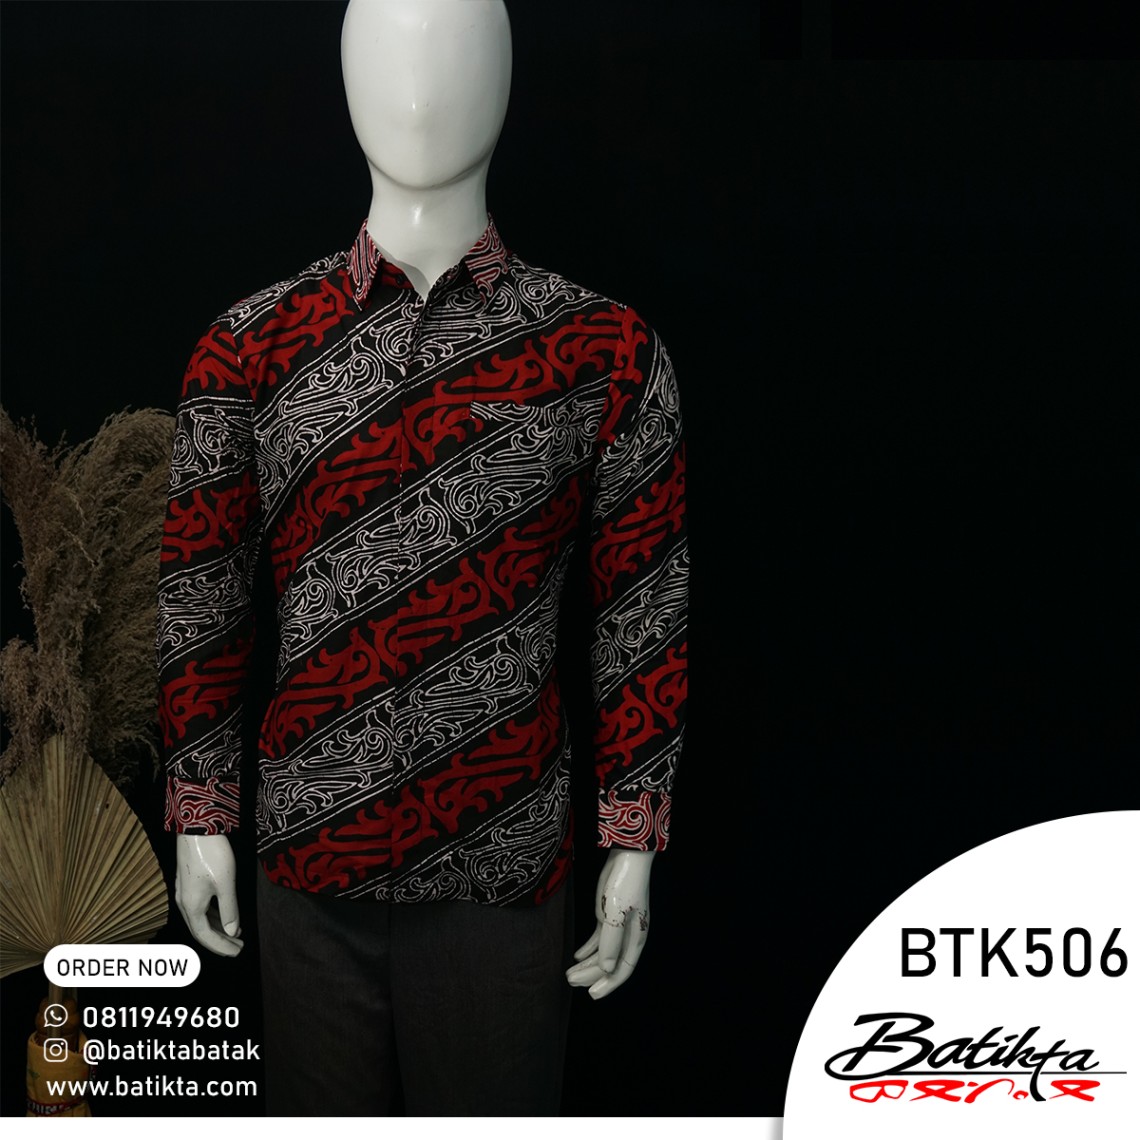 BTK506 Kemeja Batik Motif Gorga Warna Merah Putih Hitam profile picture